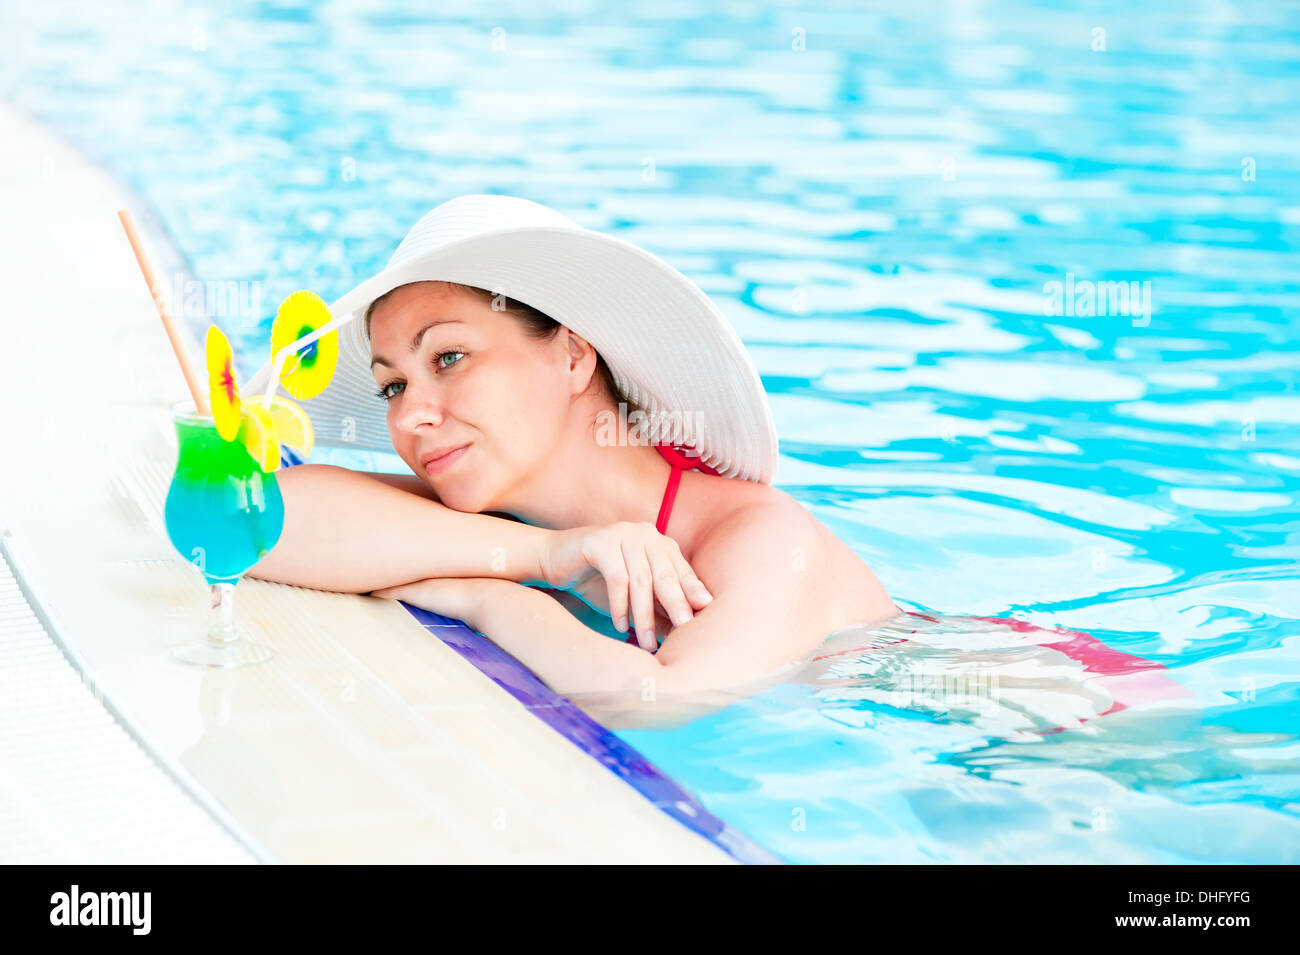 Woman in bikini and hat in the pool Stock Photo